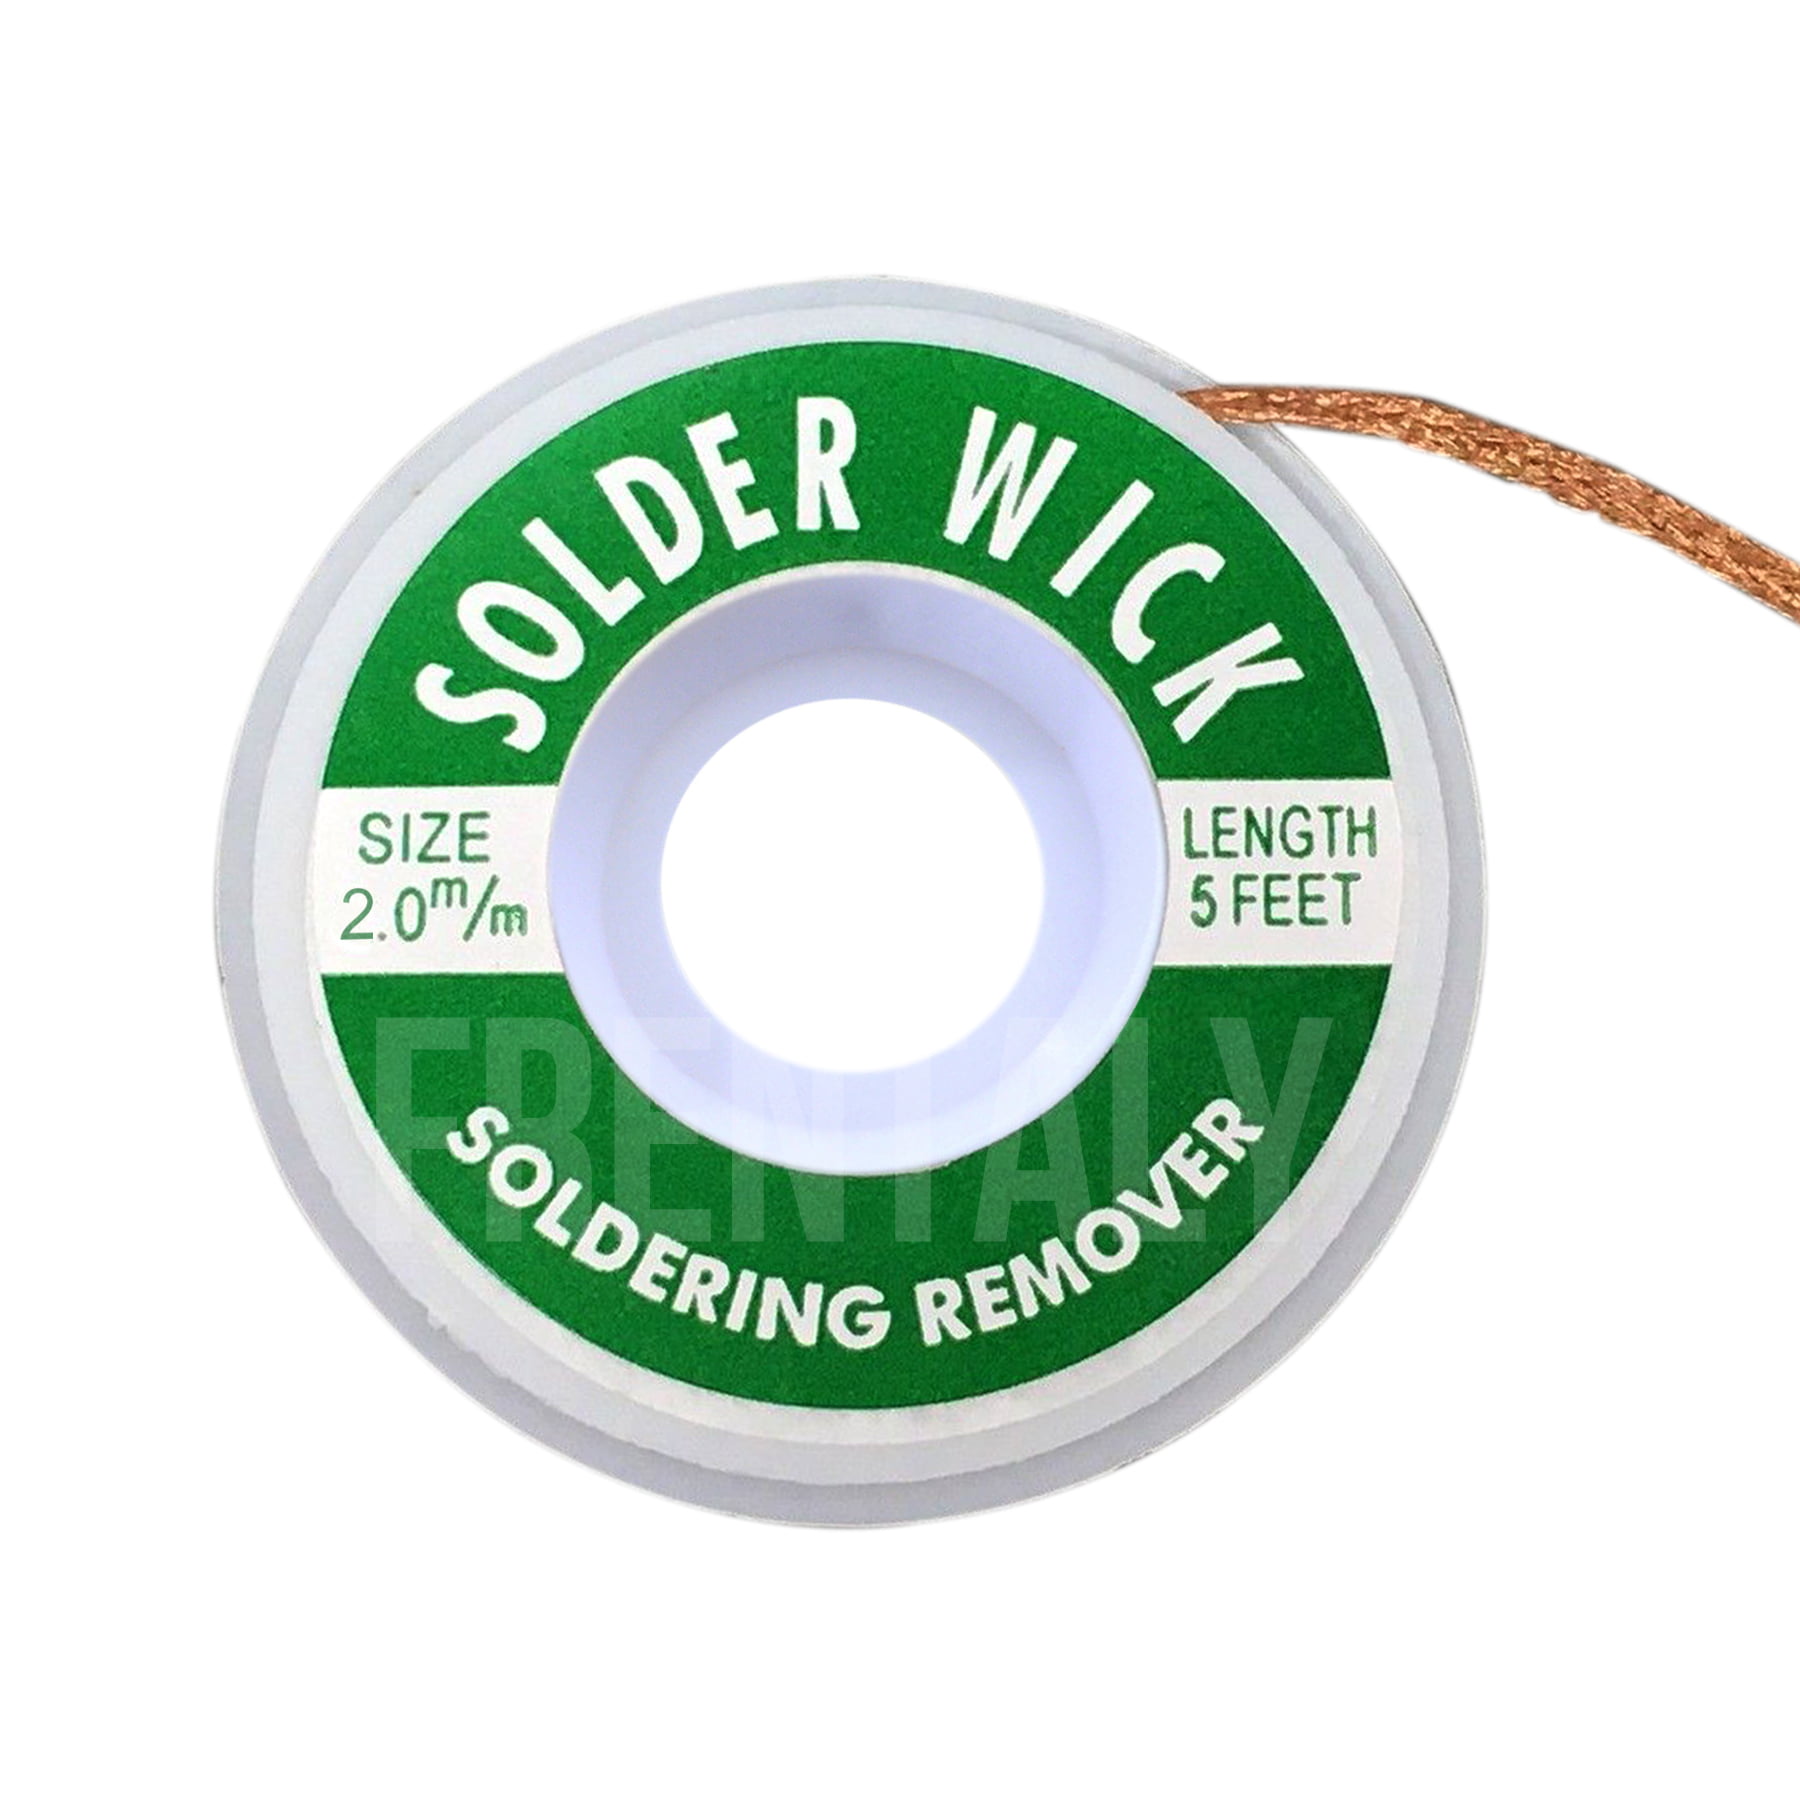 2.0 mm Desoldering Braid Solder Remover Copper Wick Spool Wire Cable 1.5m USA 